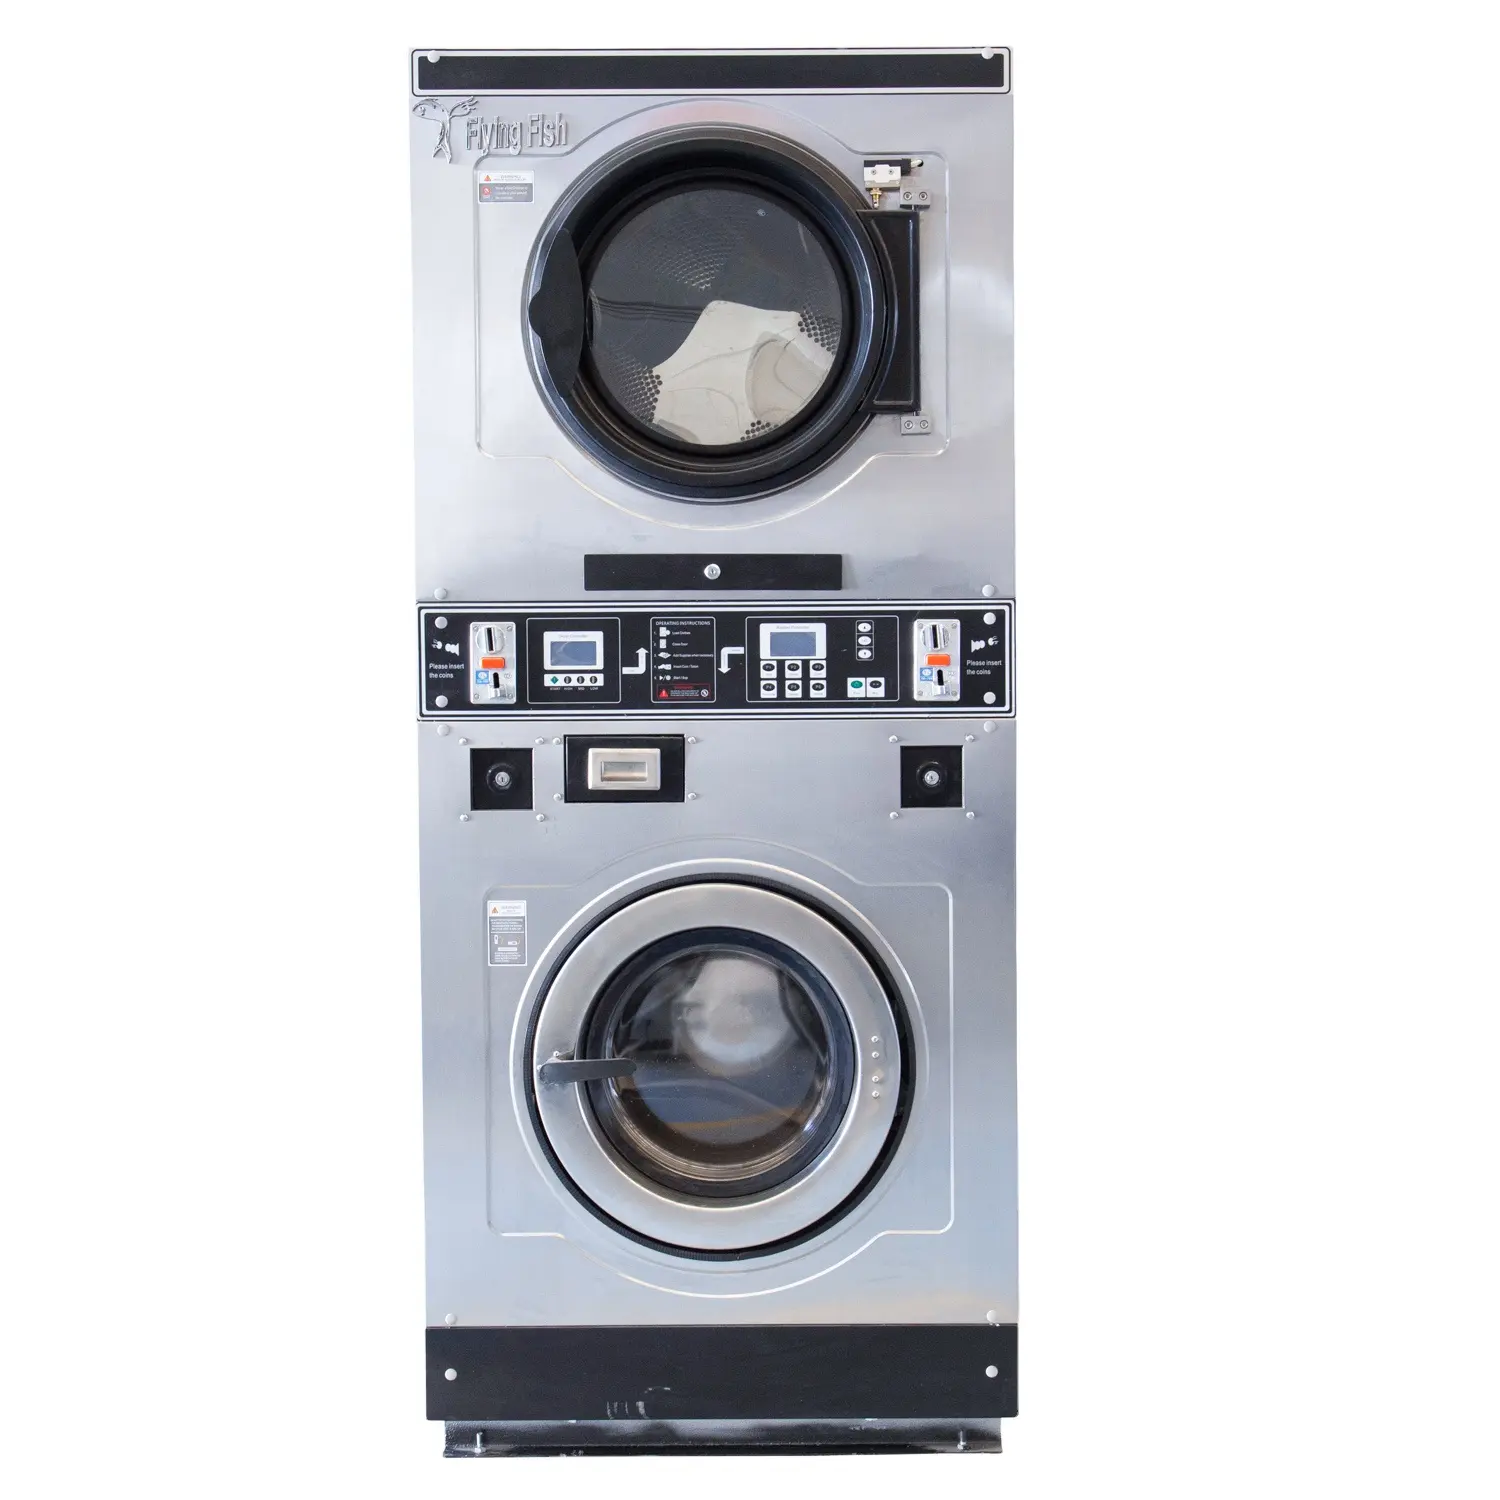 China Commerciële Muntautomaat Wasserij Vending Wasmachine Voor Wasserette Hotel School Ziekenhuis